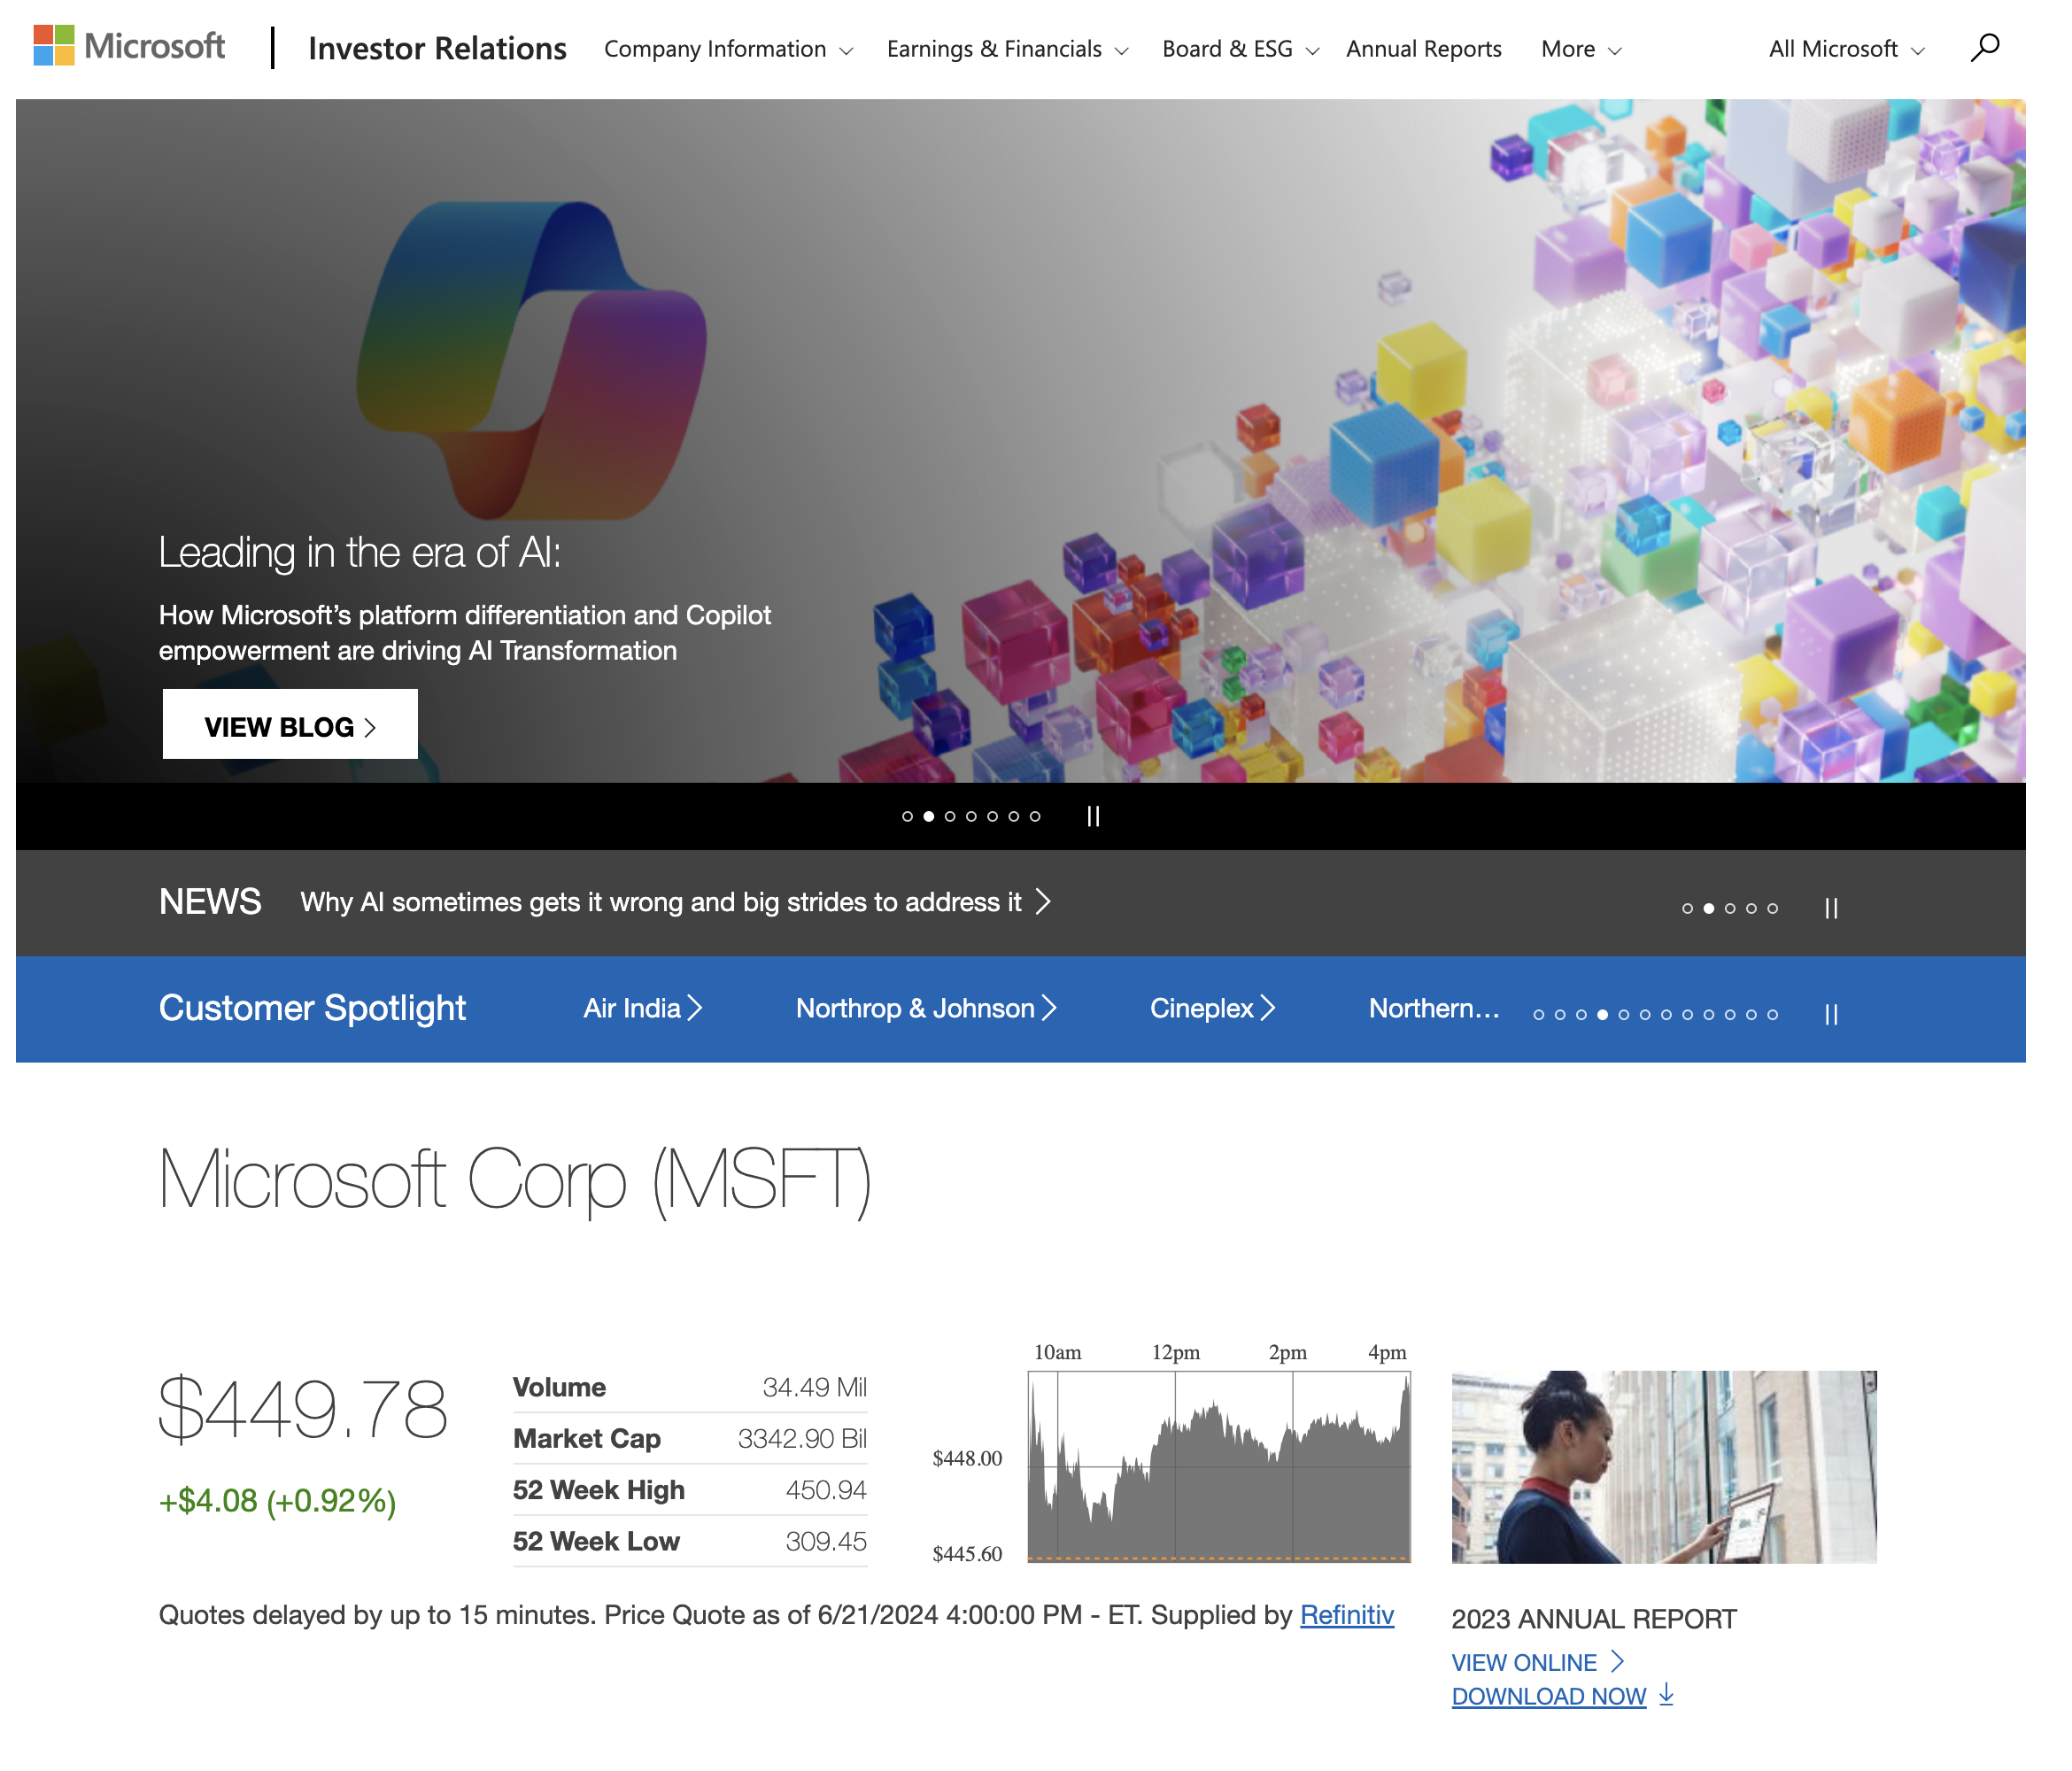 Microsoft's IR page